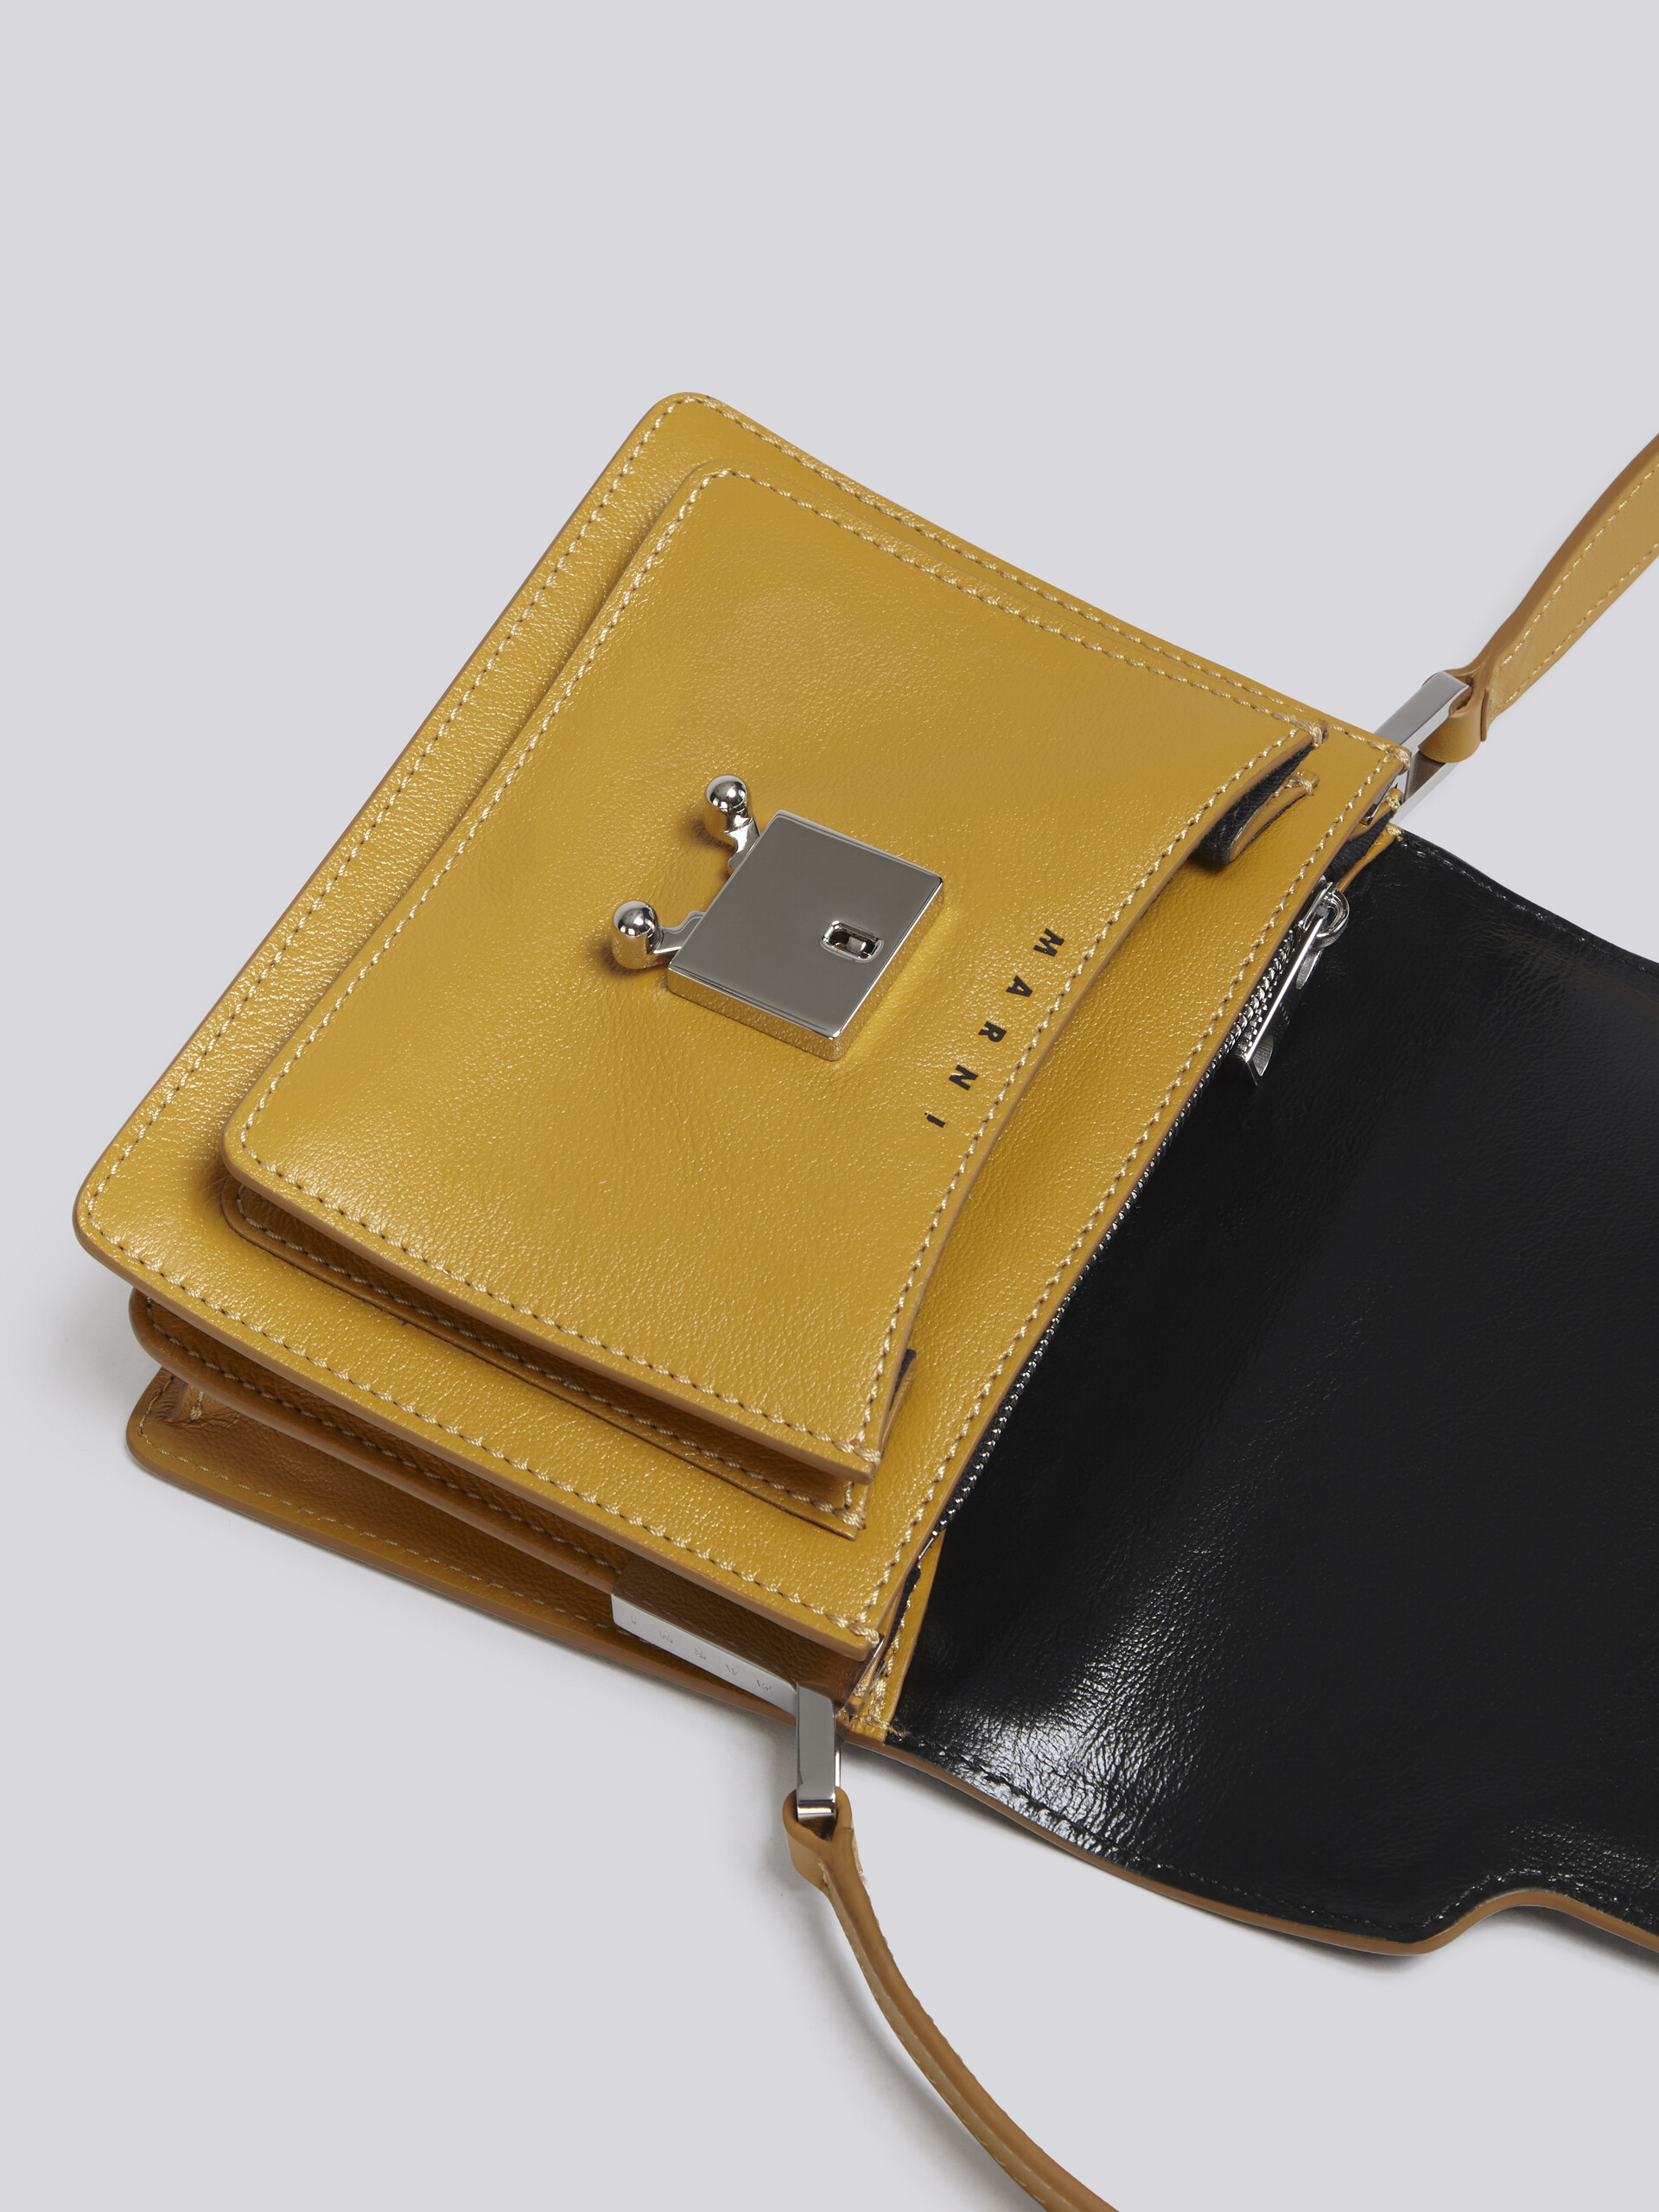 TRUNK SOFT bag mini in pelle gialla e nera - Borse a spalla - Image 5